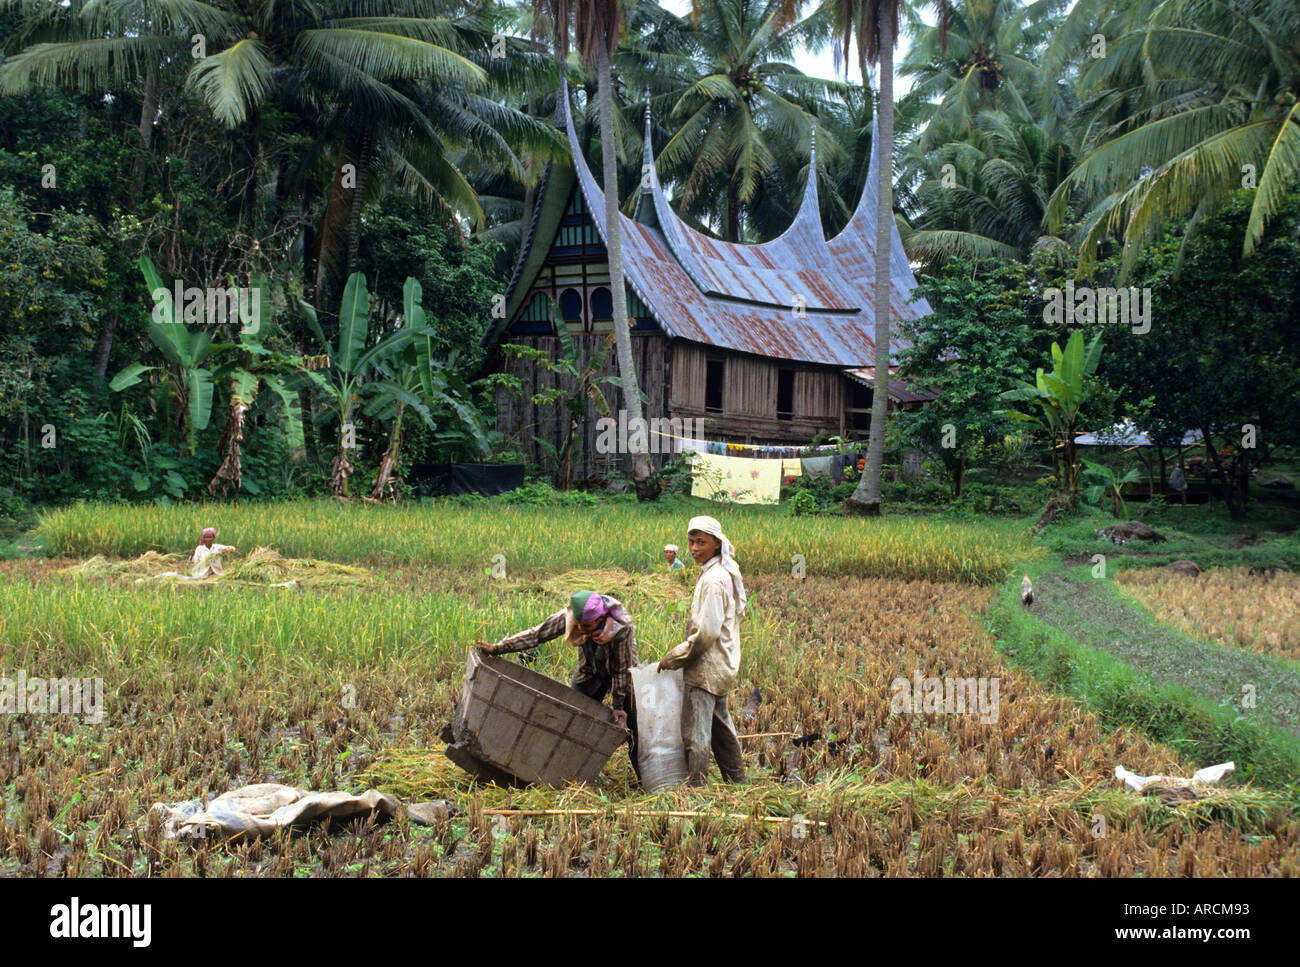 Farm typical, traditional, Minangkabau, house, native,  architecture  Indonesia Sumatra Stock Photo